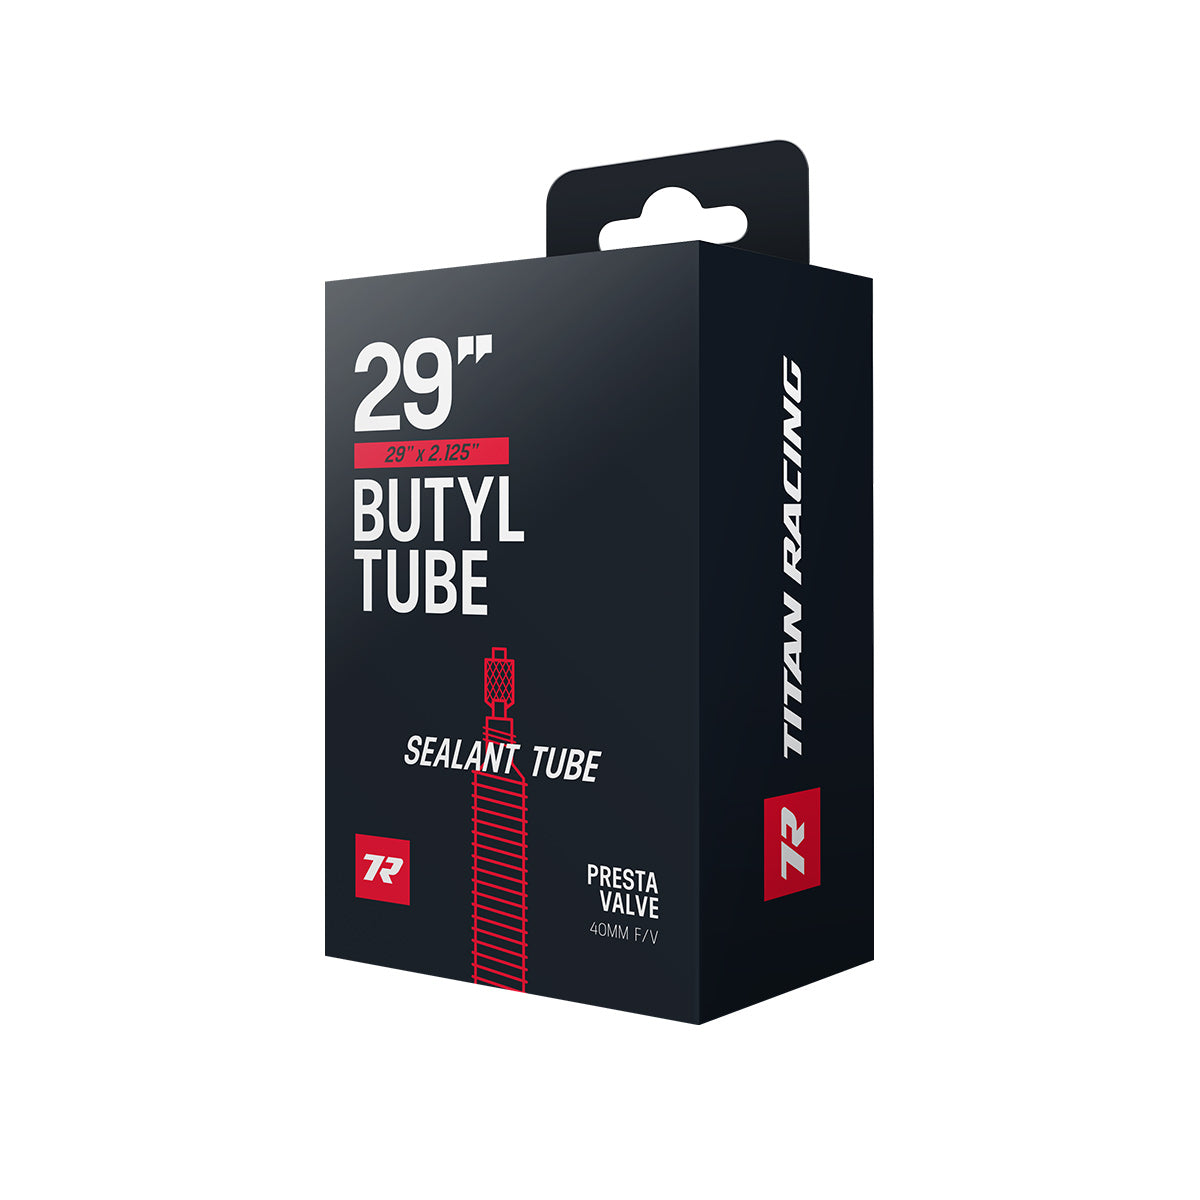 Titan Racing Sealant Tube 29"